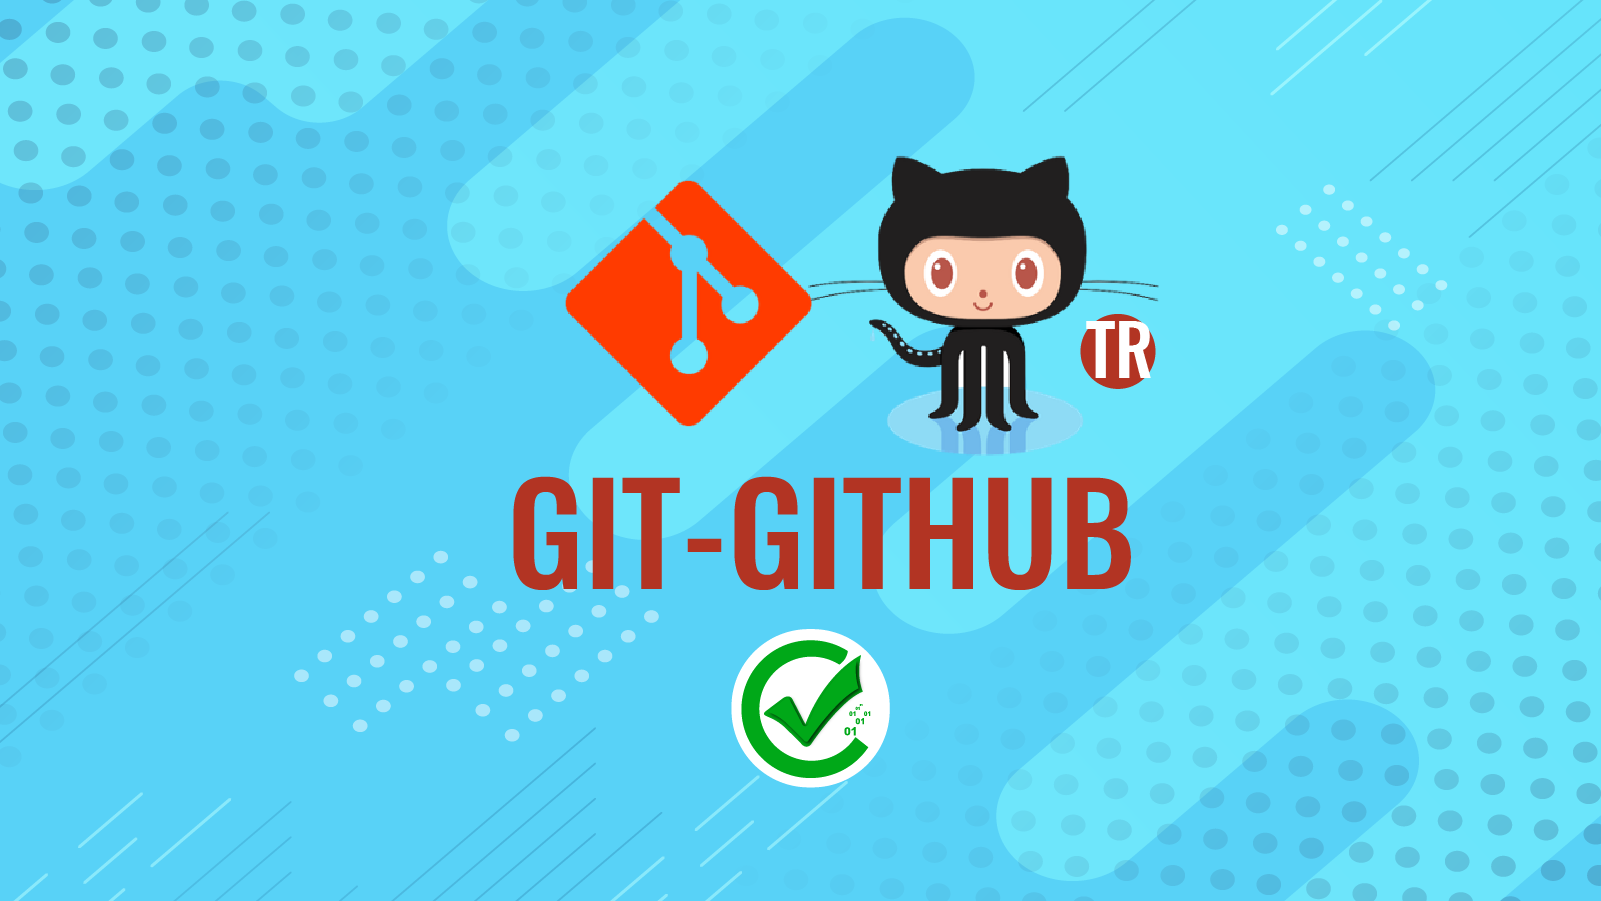 Git - Github 224